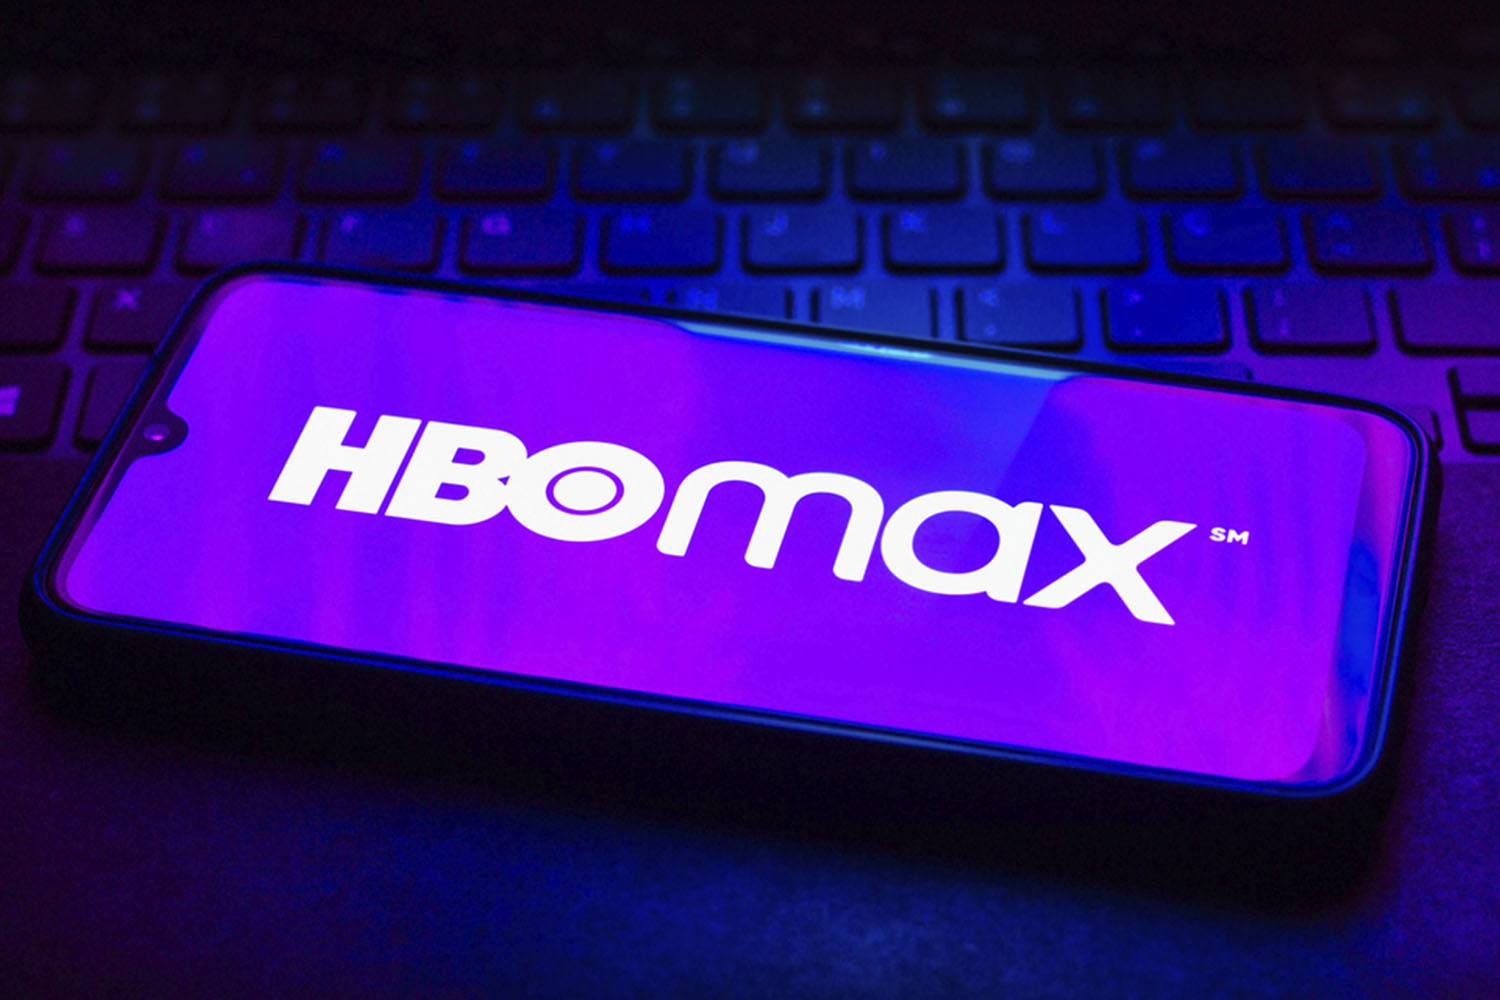 Aqui estão as séries em destaque no TOP 10 da HBO Max hoje